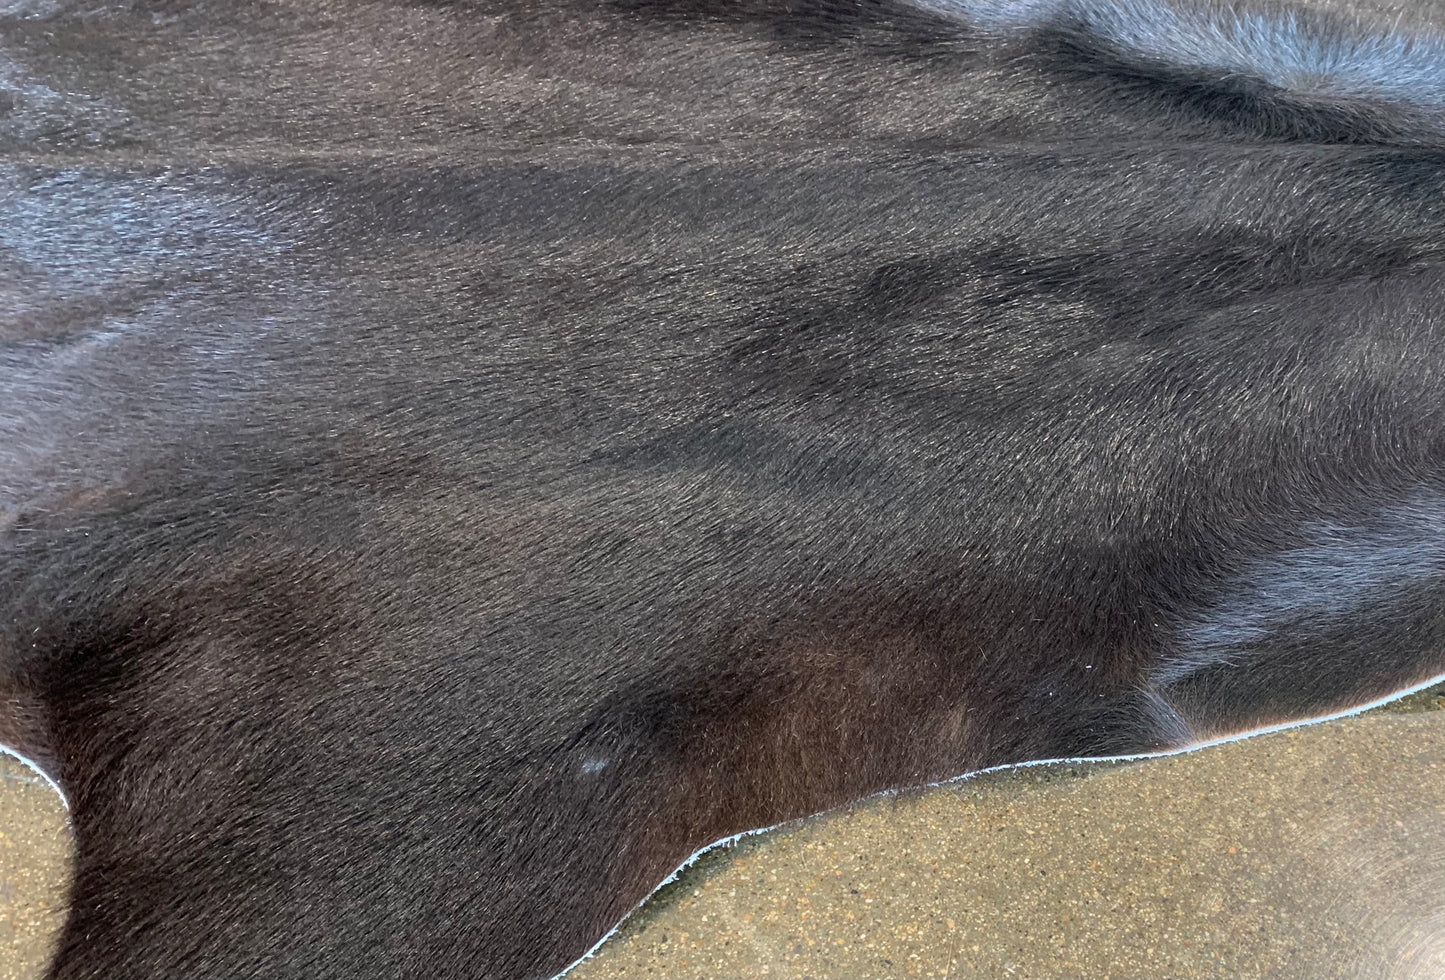 S-5: Cowhide rug - Medium black and brown